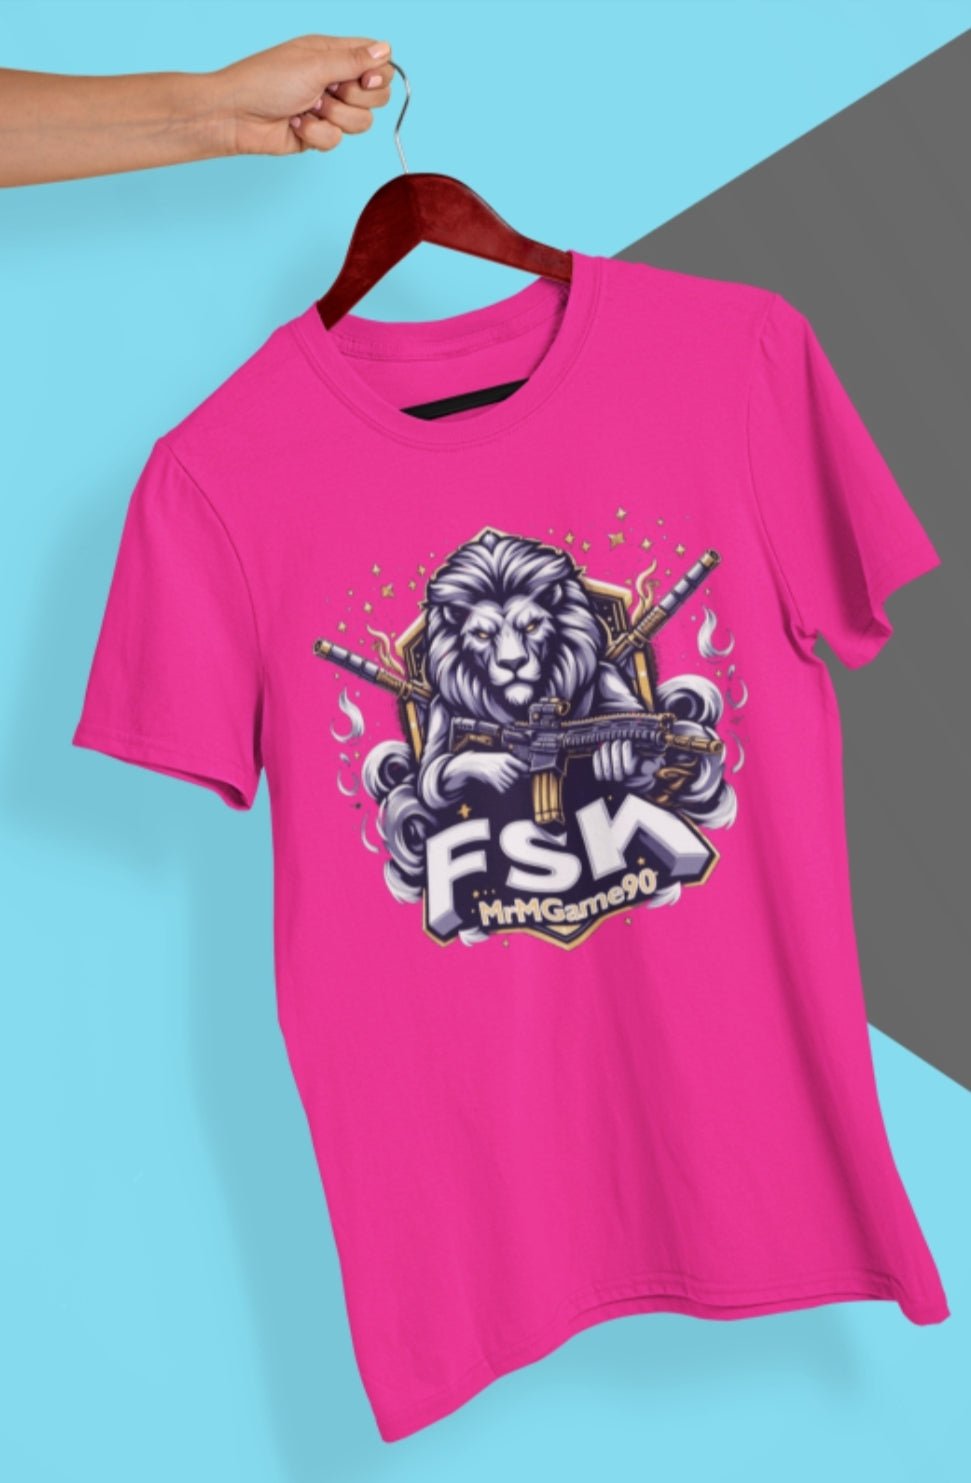 FSK Mr M Game T-Shirt - Luxe-Custom-Designer